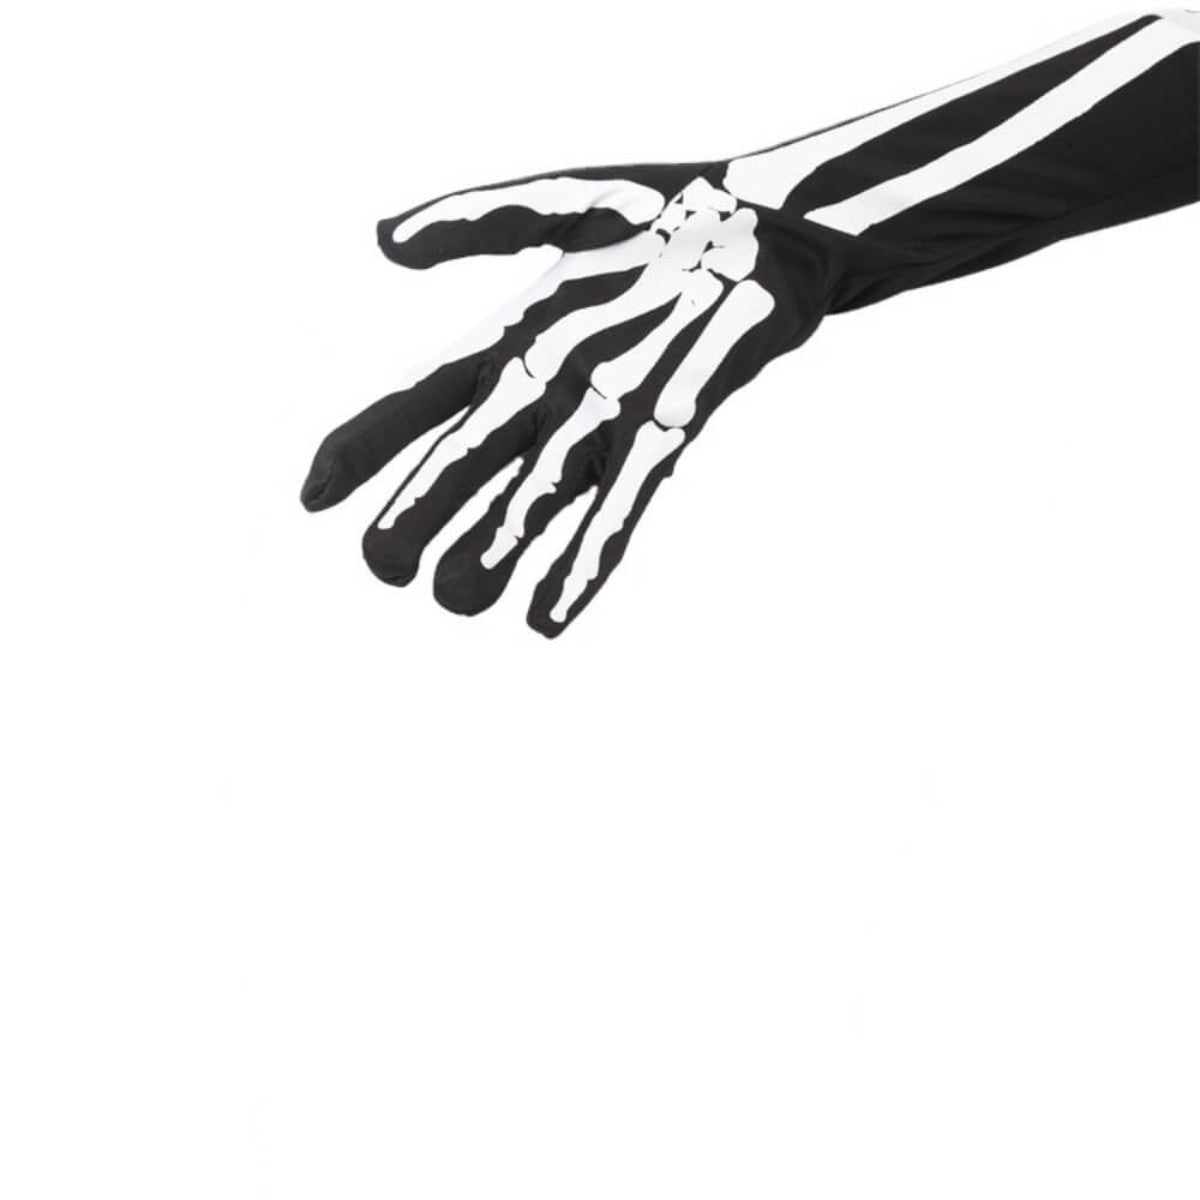 Ro Rox Long Skeleton Full Finger Black and White Gloves